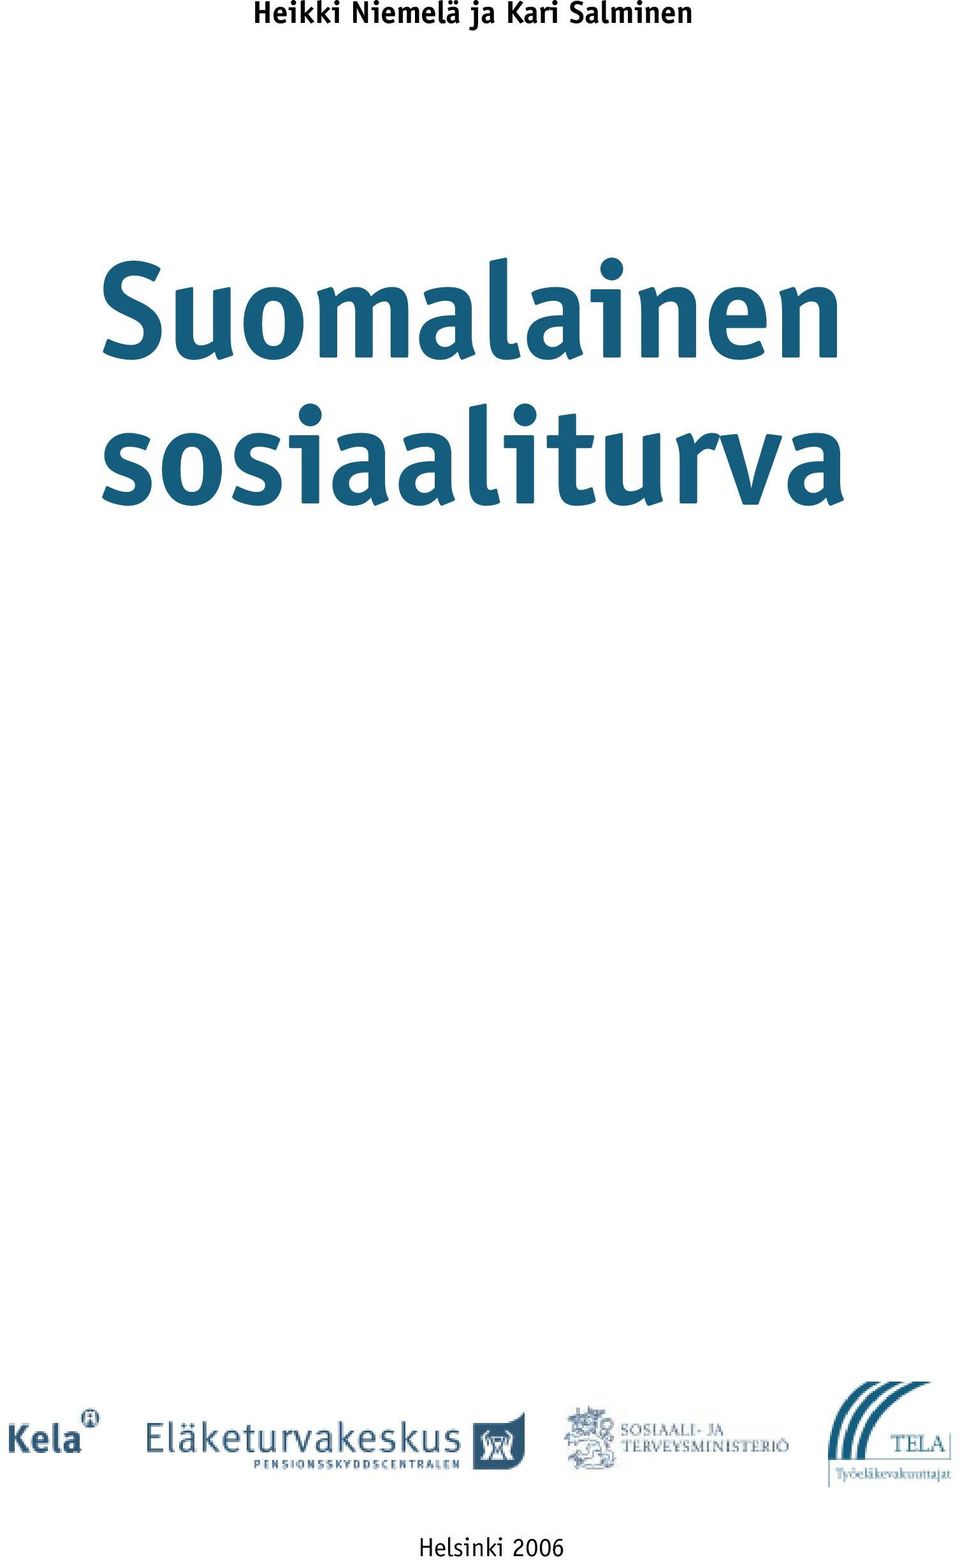 Suomalainen